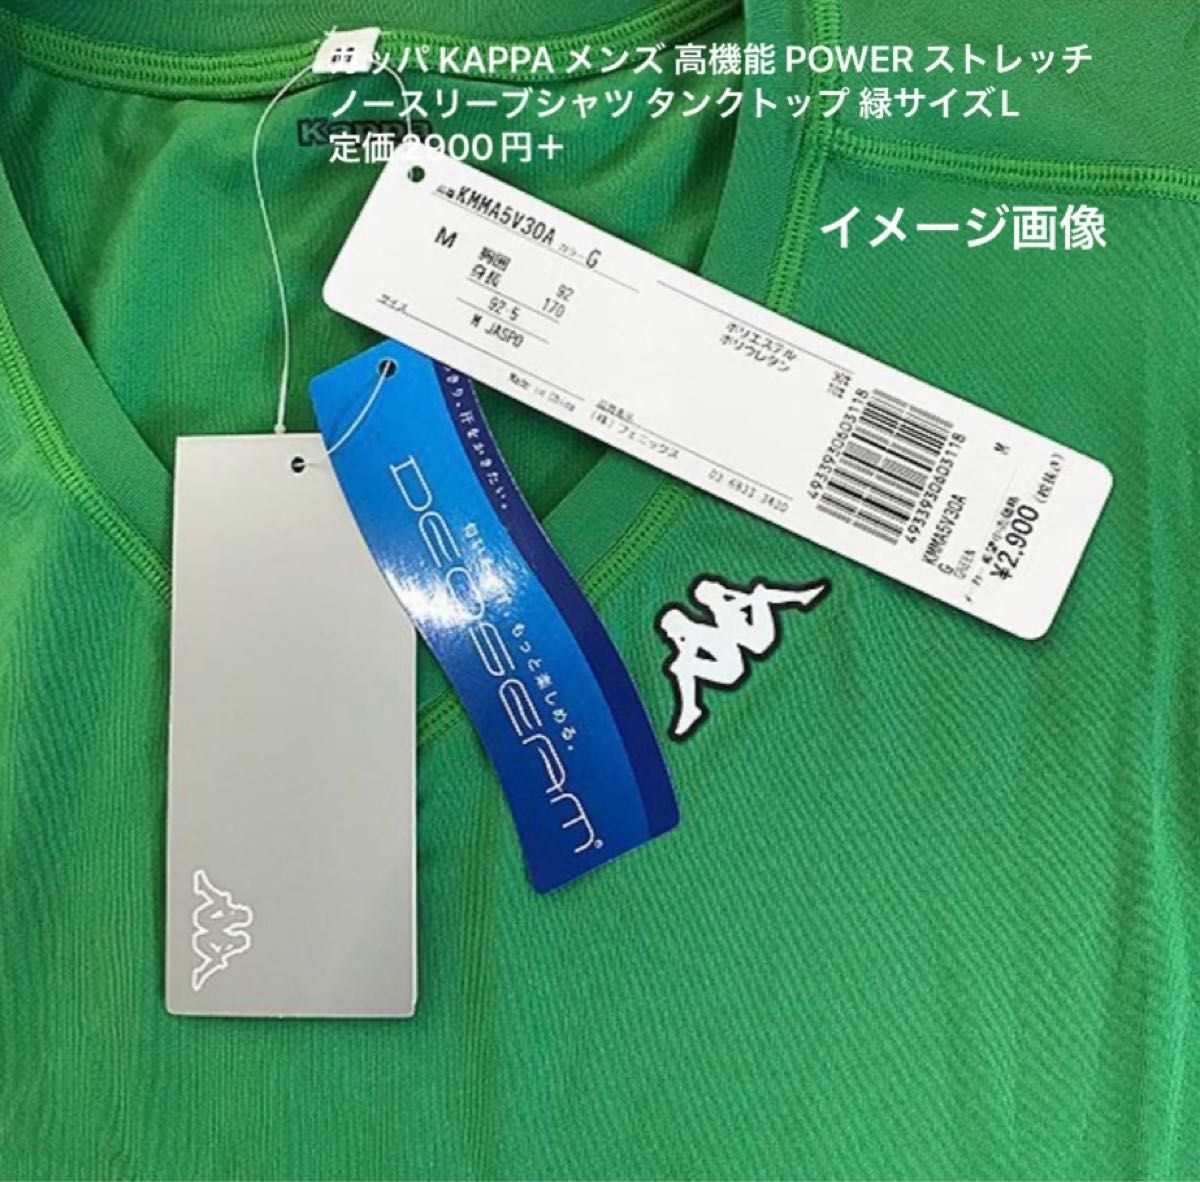 カッパ KAPPA メンズ 高機能 POWER ストレッチ ノースリーブシャツ タンクトップ 緑サイズL